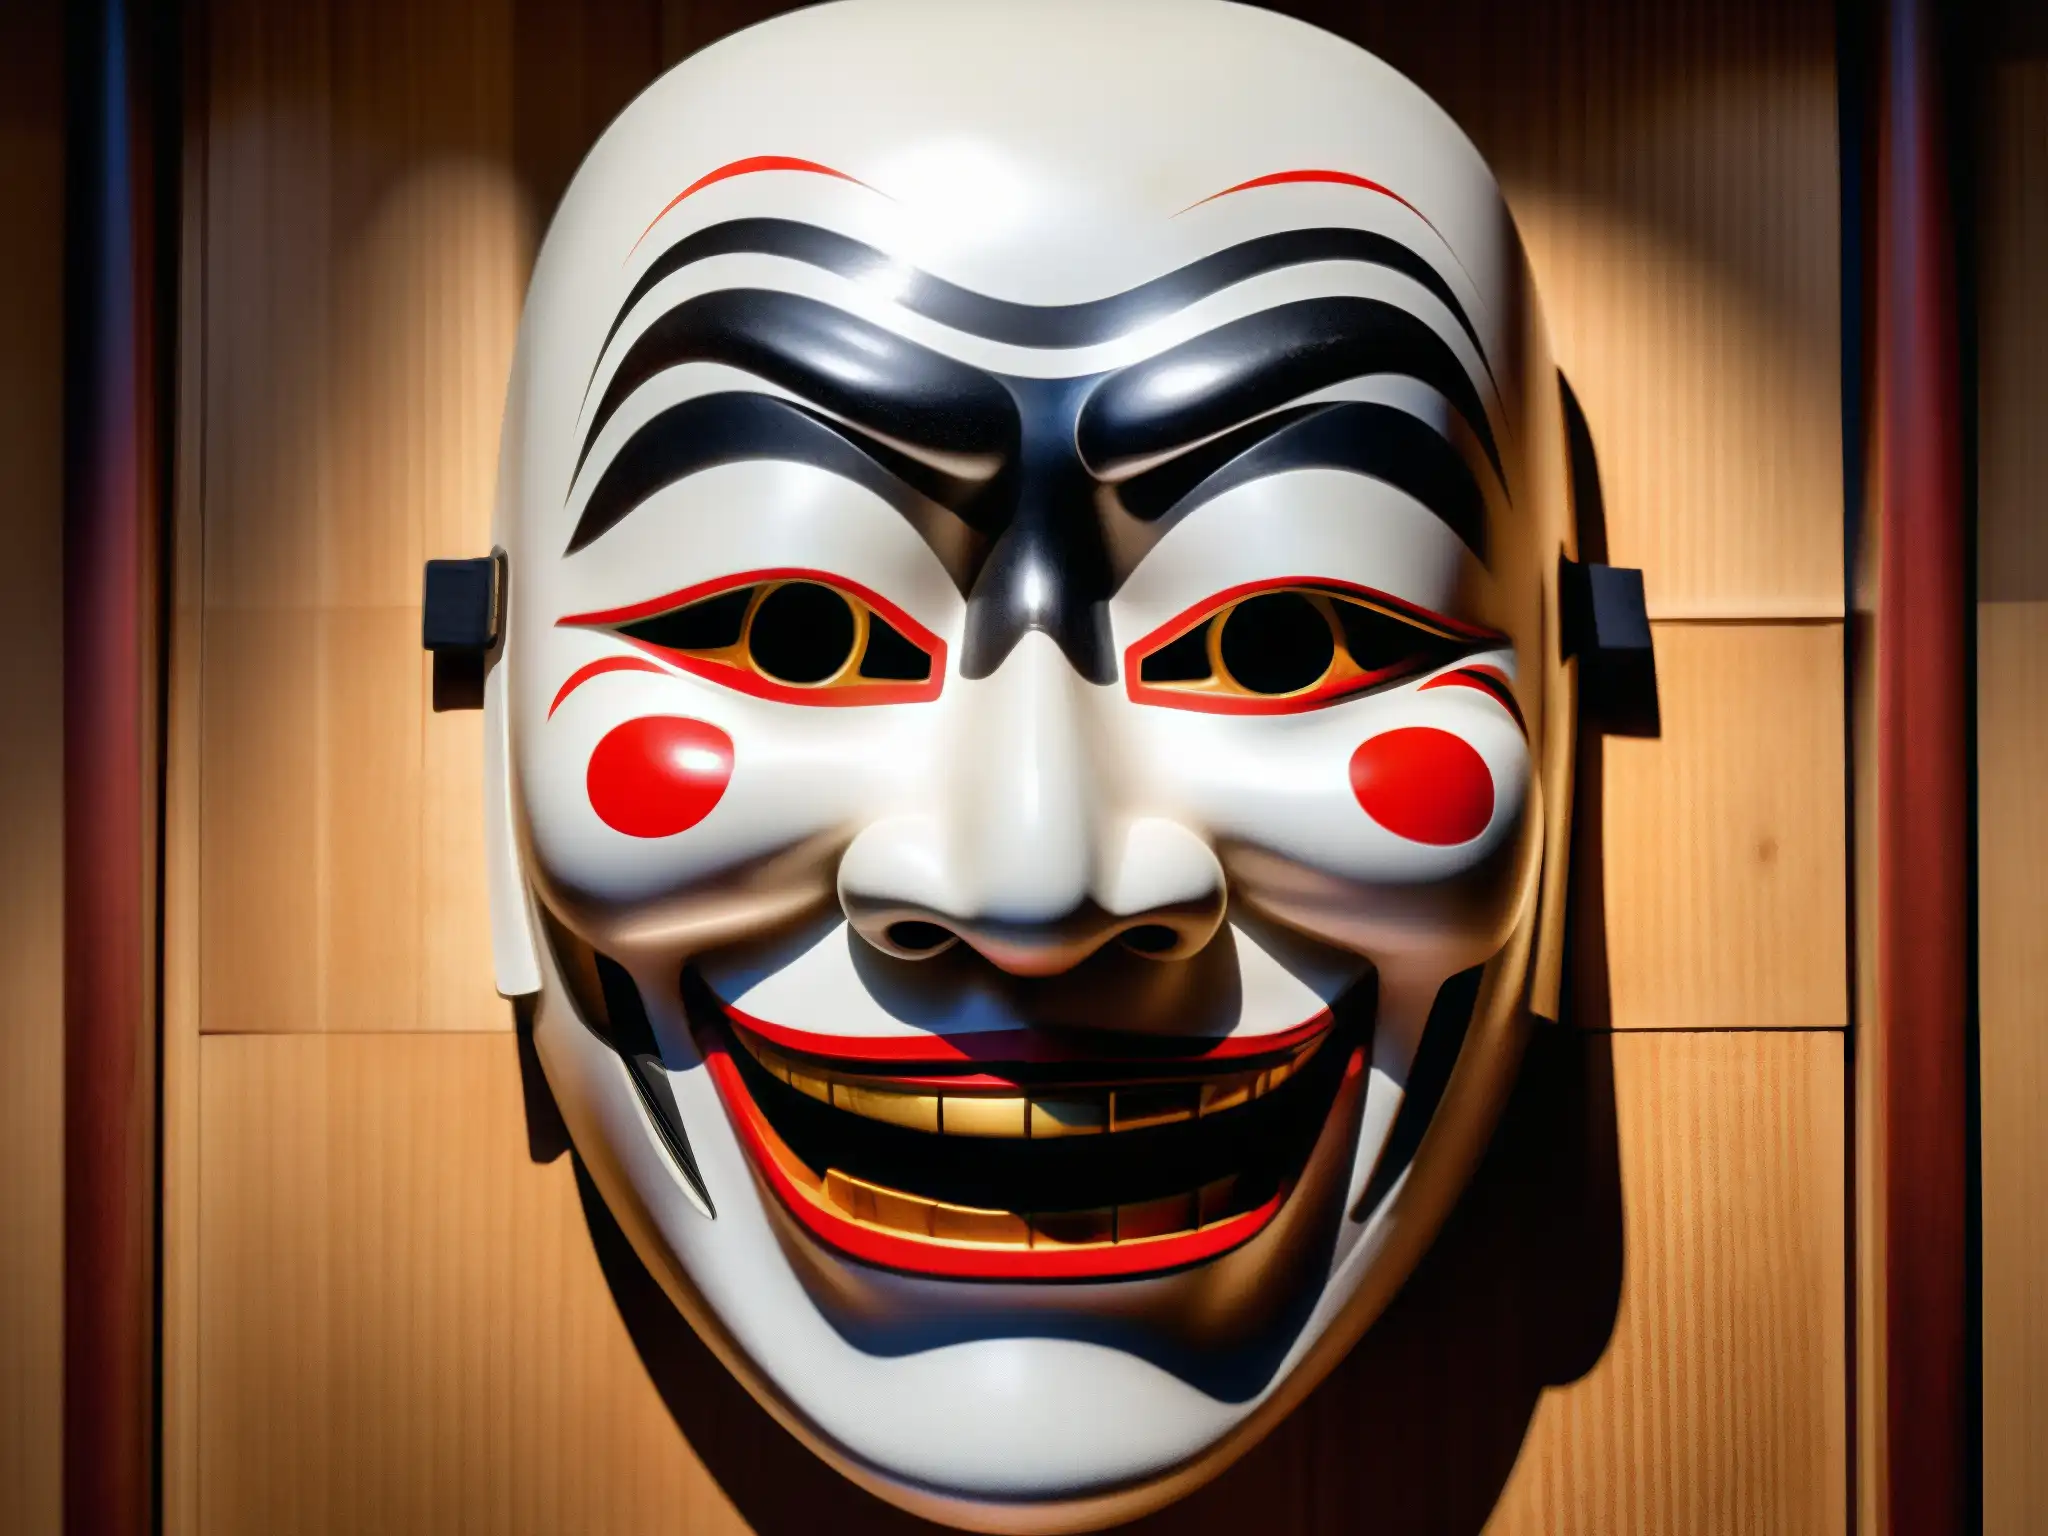 Una máscara japonesa Noh detallada y aterradora, con expresión intensa y dramática, iluminada por un haz de luz